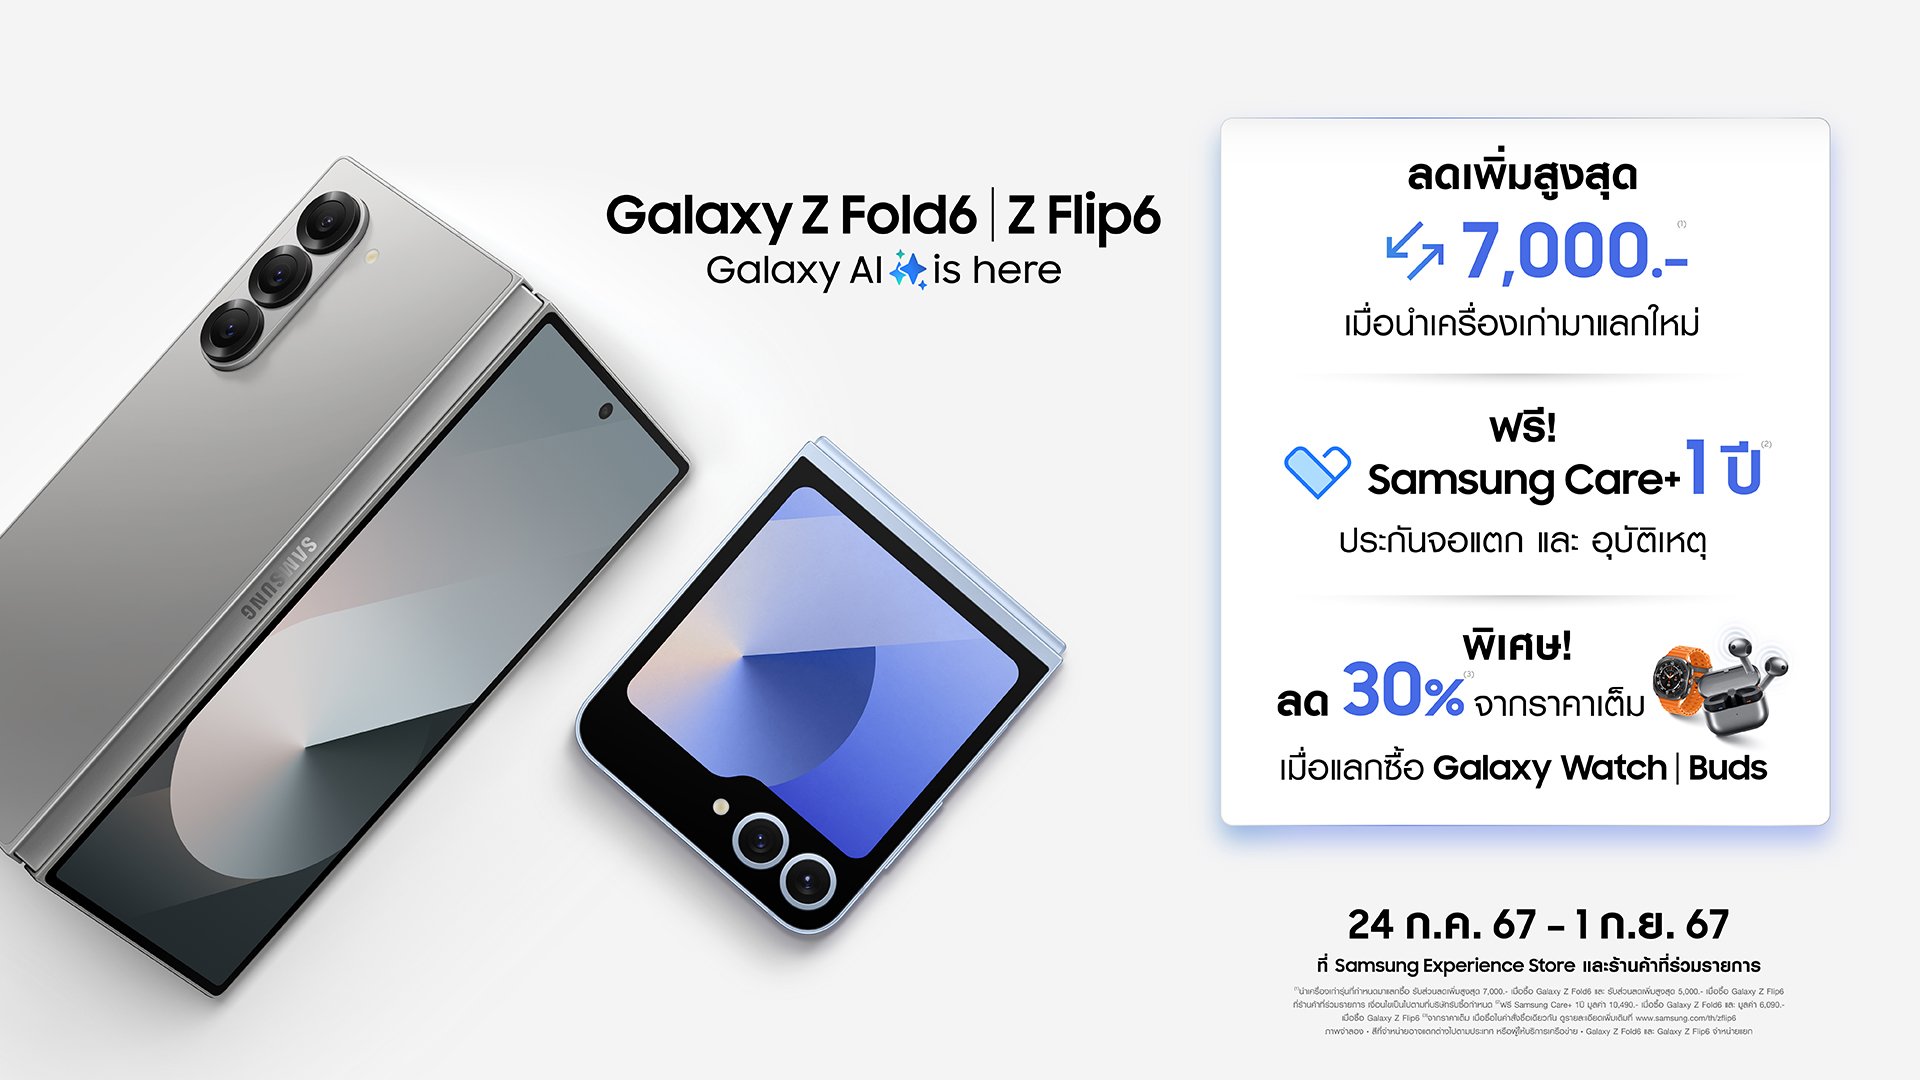 ใหม่! Galaxy Z Fold6 l Z Flip6 สมาร์ทโฟนพับได้รุ่นใหม่ล่าสุดจากซัมซุง วางจำหน่ายอย่างเป็นทางการแล้ว! ซื้อวันนี้ รับสิทธิพิเศษ 3 ต่อ!